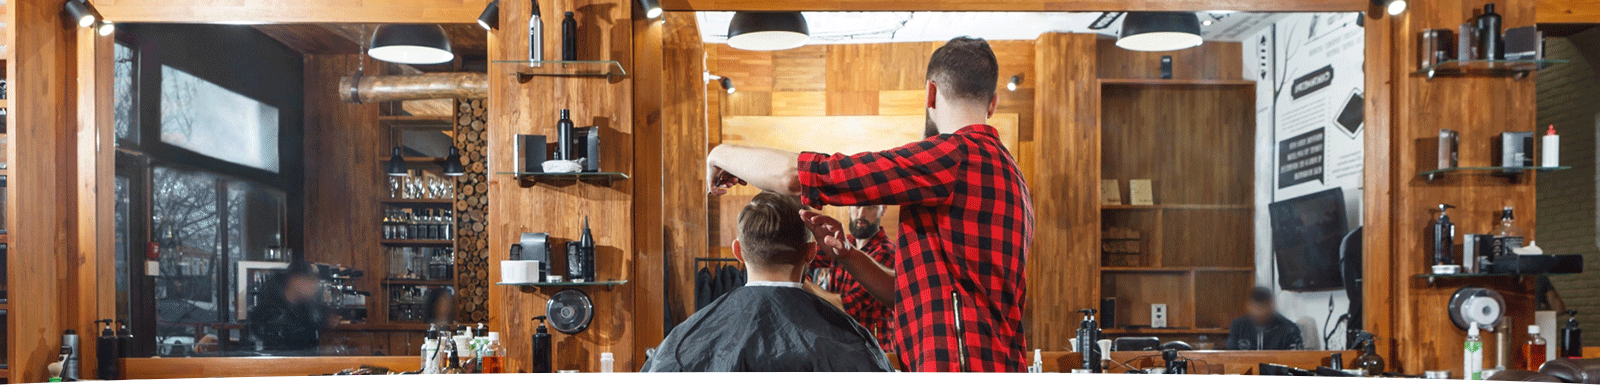 髪工房ヒロミ岩倉市|“男を磨く” 大人のヘアサロン。髪質や頭皮ケア・スキンケア・炭酸泉シャンプー・ヒアルロン酸シェービング・ヘッドスパ